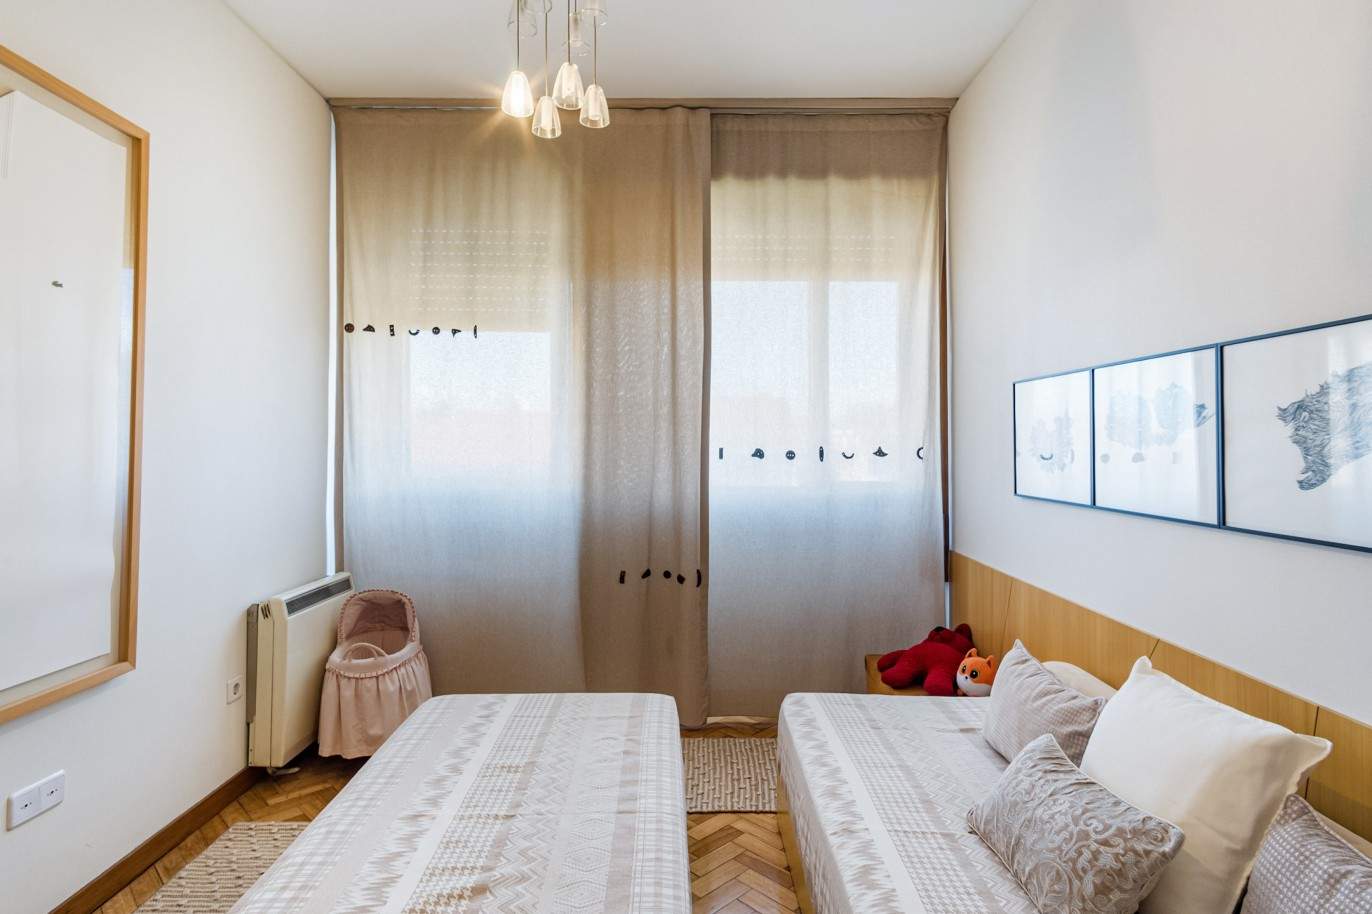 3-Zimmer-Wohnung, zu verkaufen, in der Nähe der Universität Pole, Porto, Portugal_212447